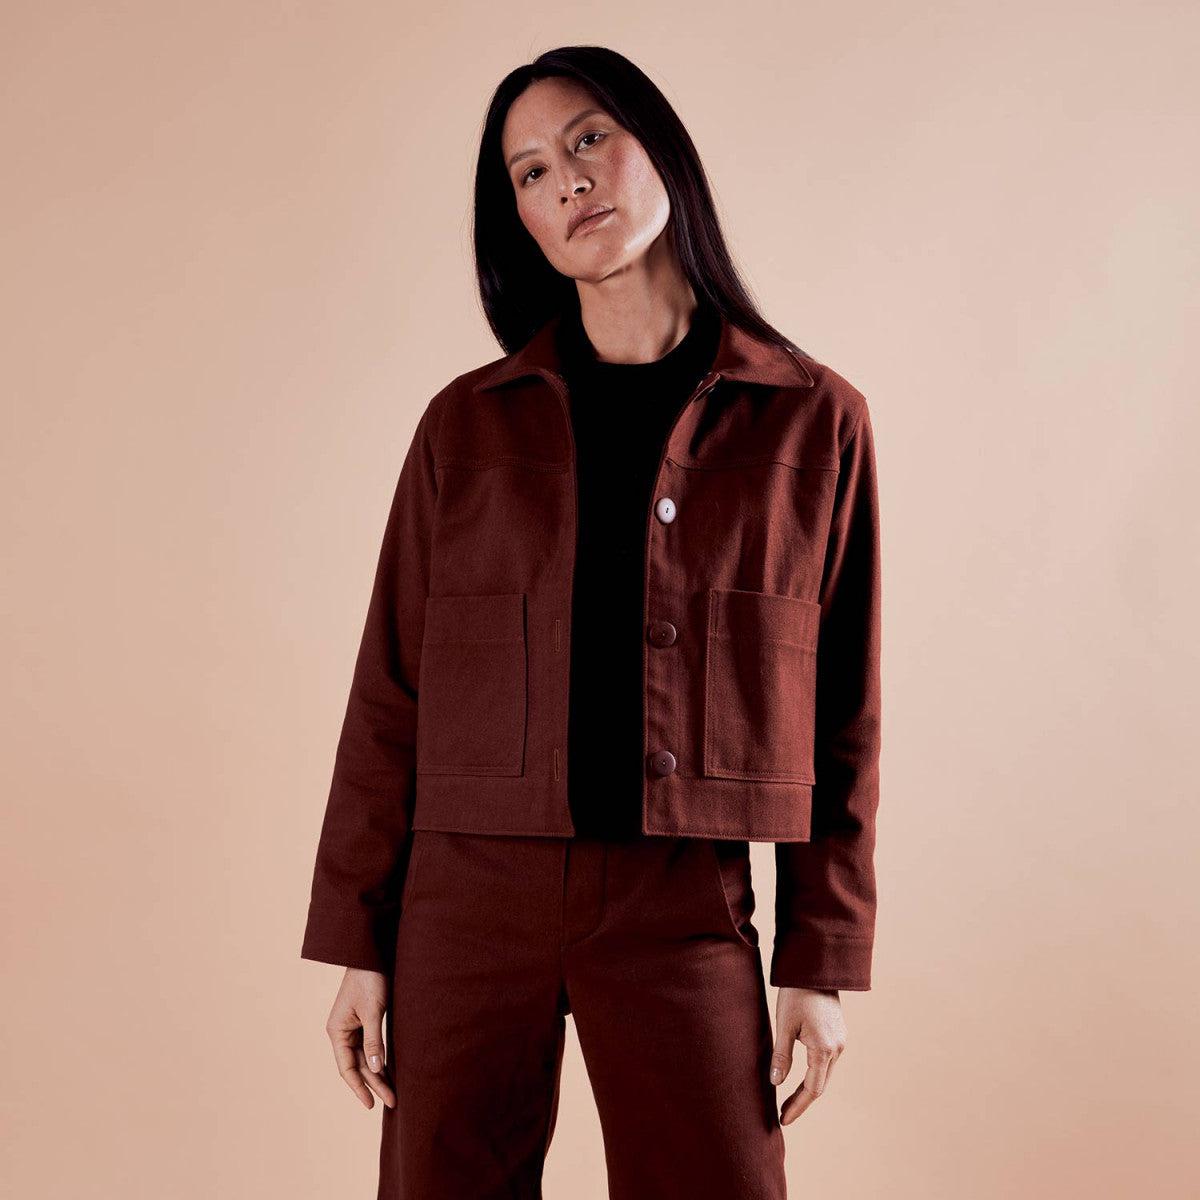 Atelier Brunette-LA Veste Jacket Pattern-sewing pattern-gather here online